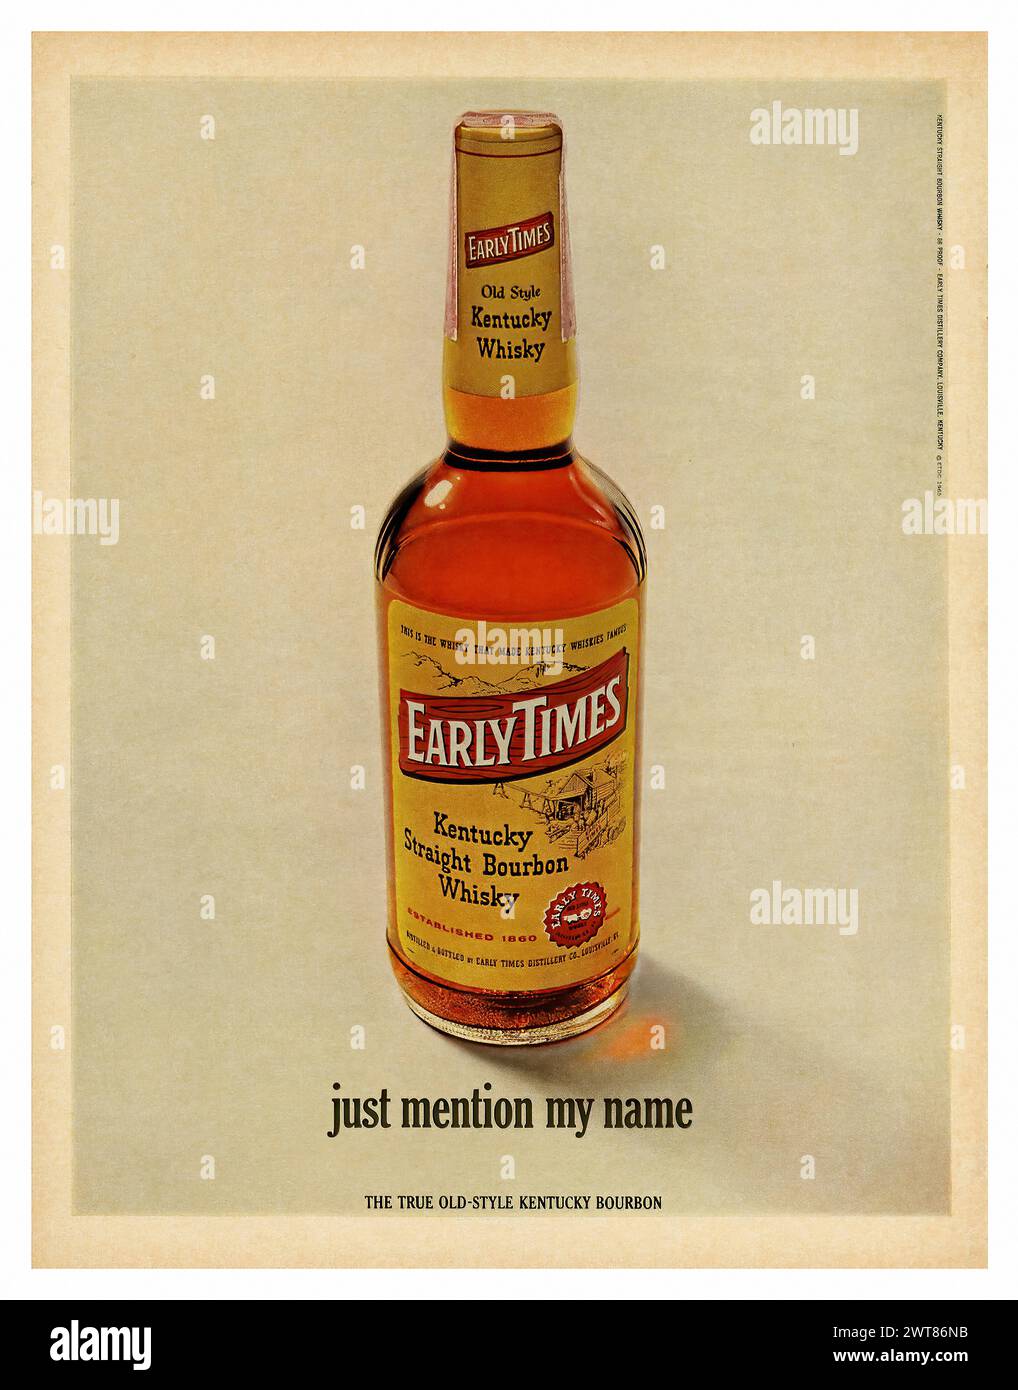 Early Times Kentucky Straight Bourbon Whisky (1965) - Vintage magazine américain publicité dans la presse Banque D'Images